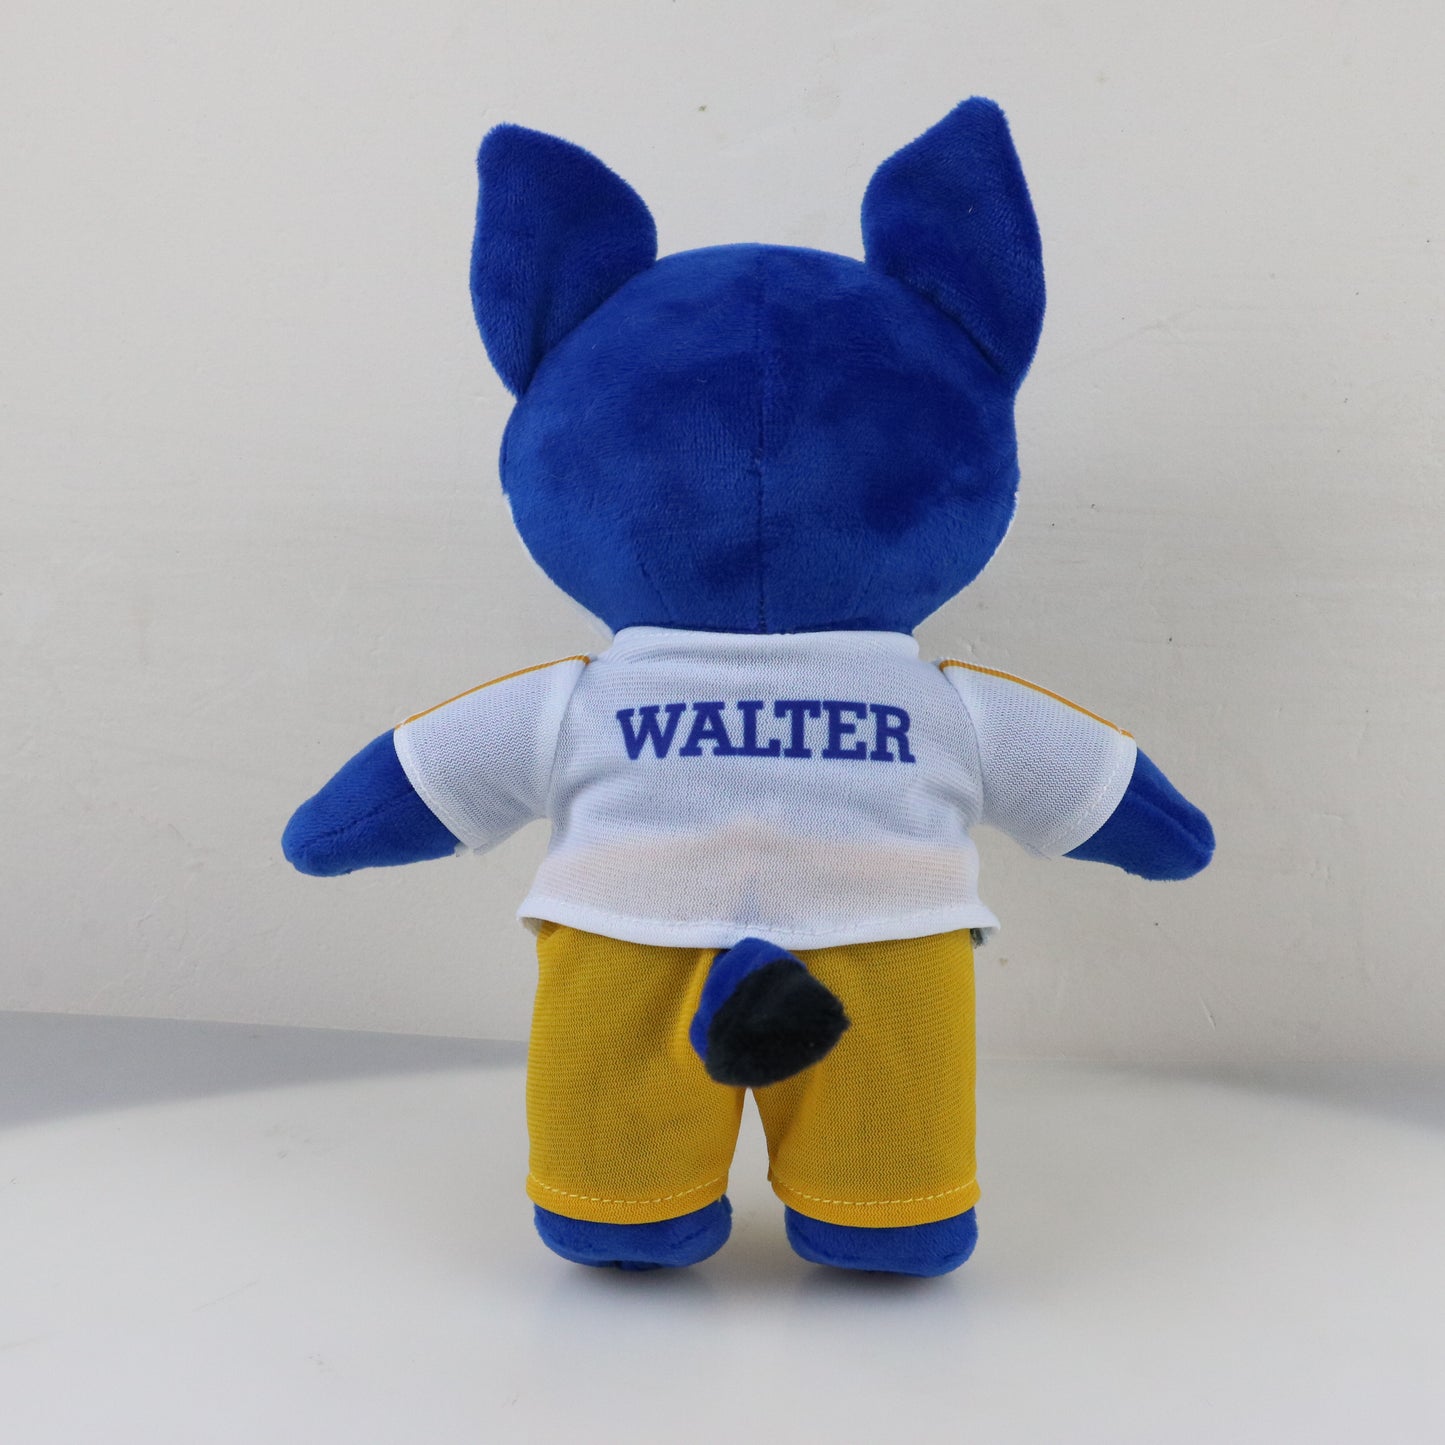 Plush Walter the Wildcat